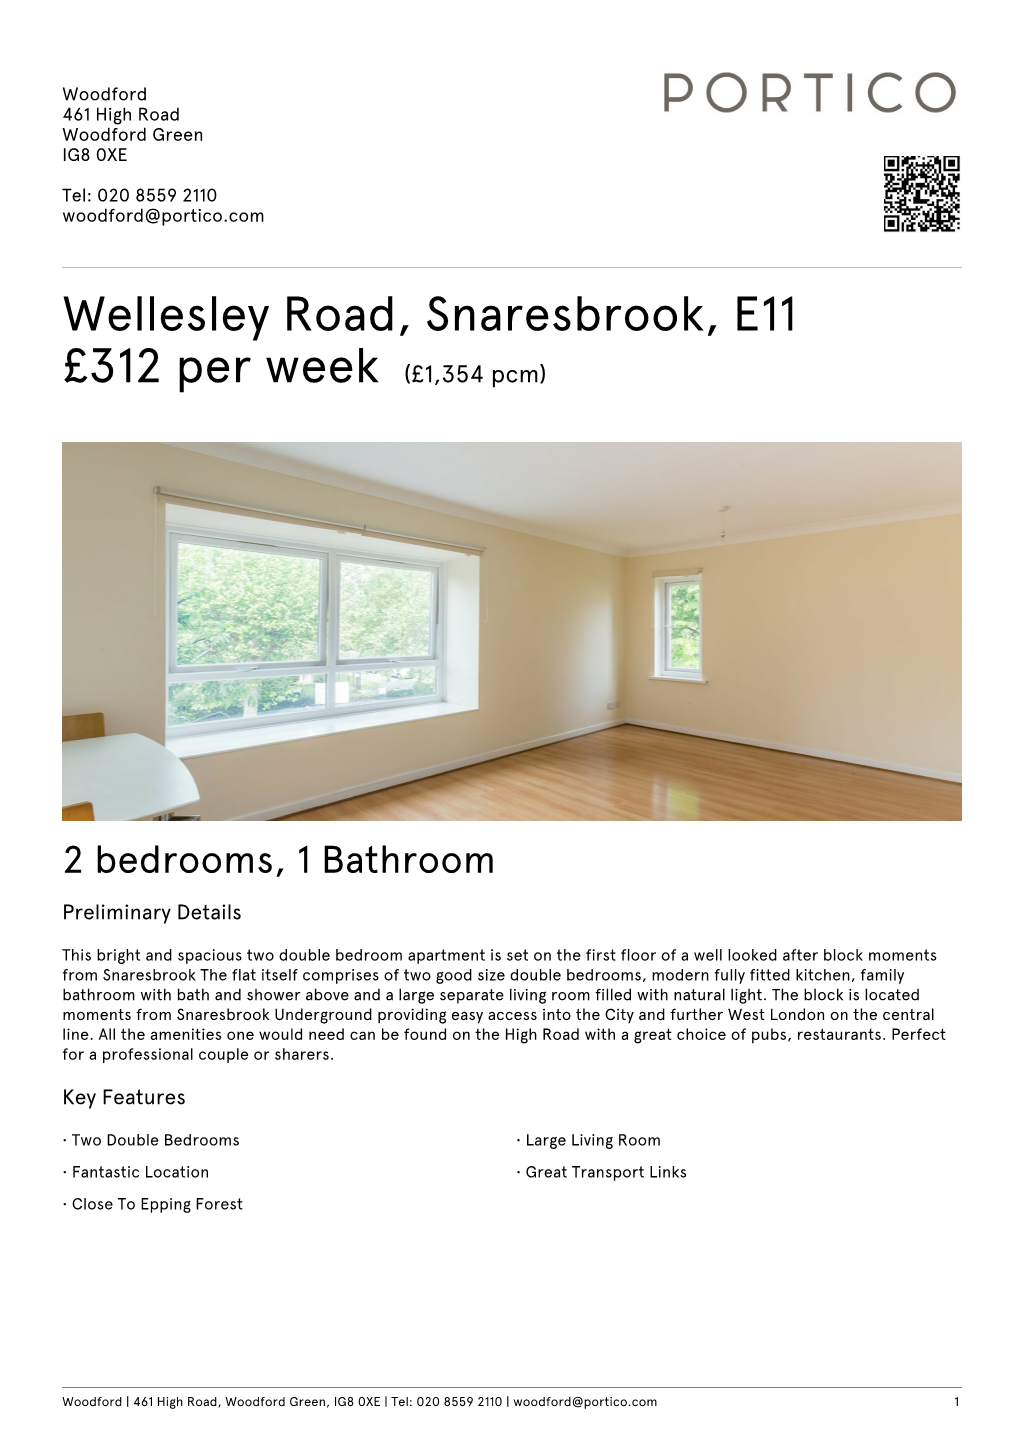 Wellesley Road, Snaresbrook, E11 £312 Per Week